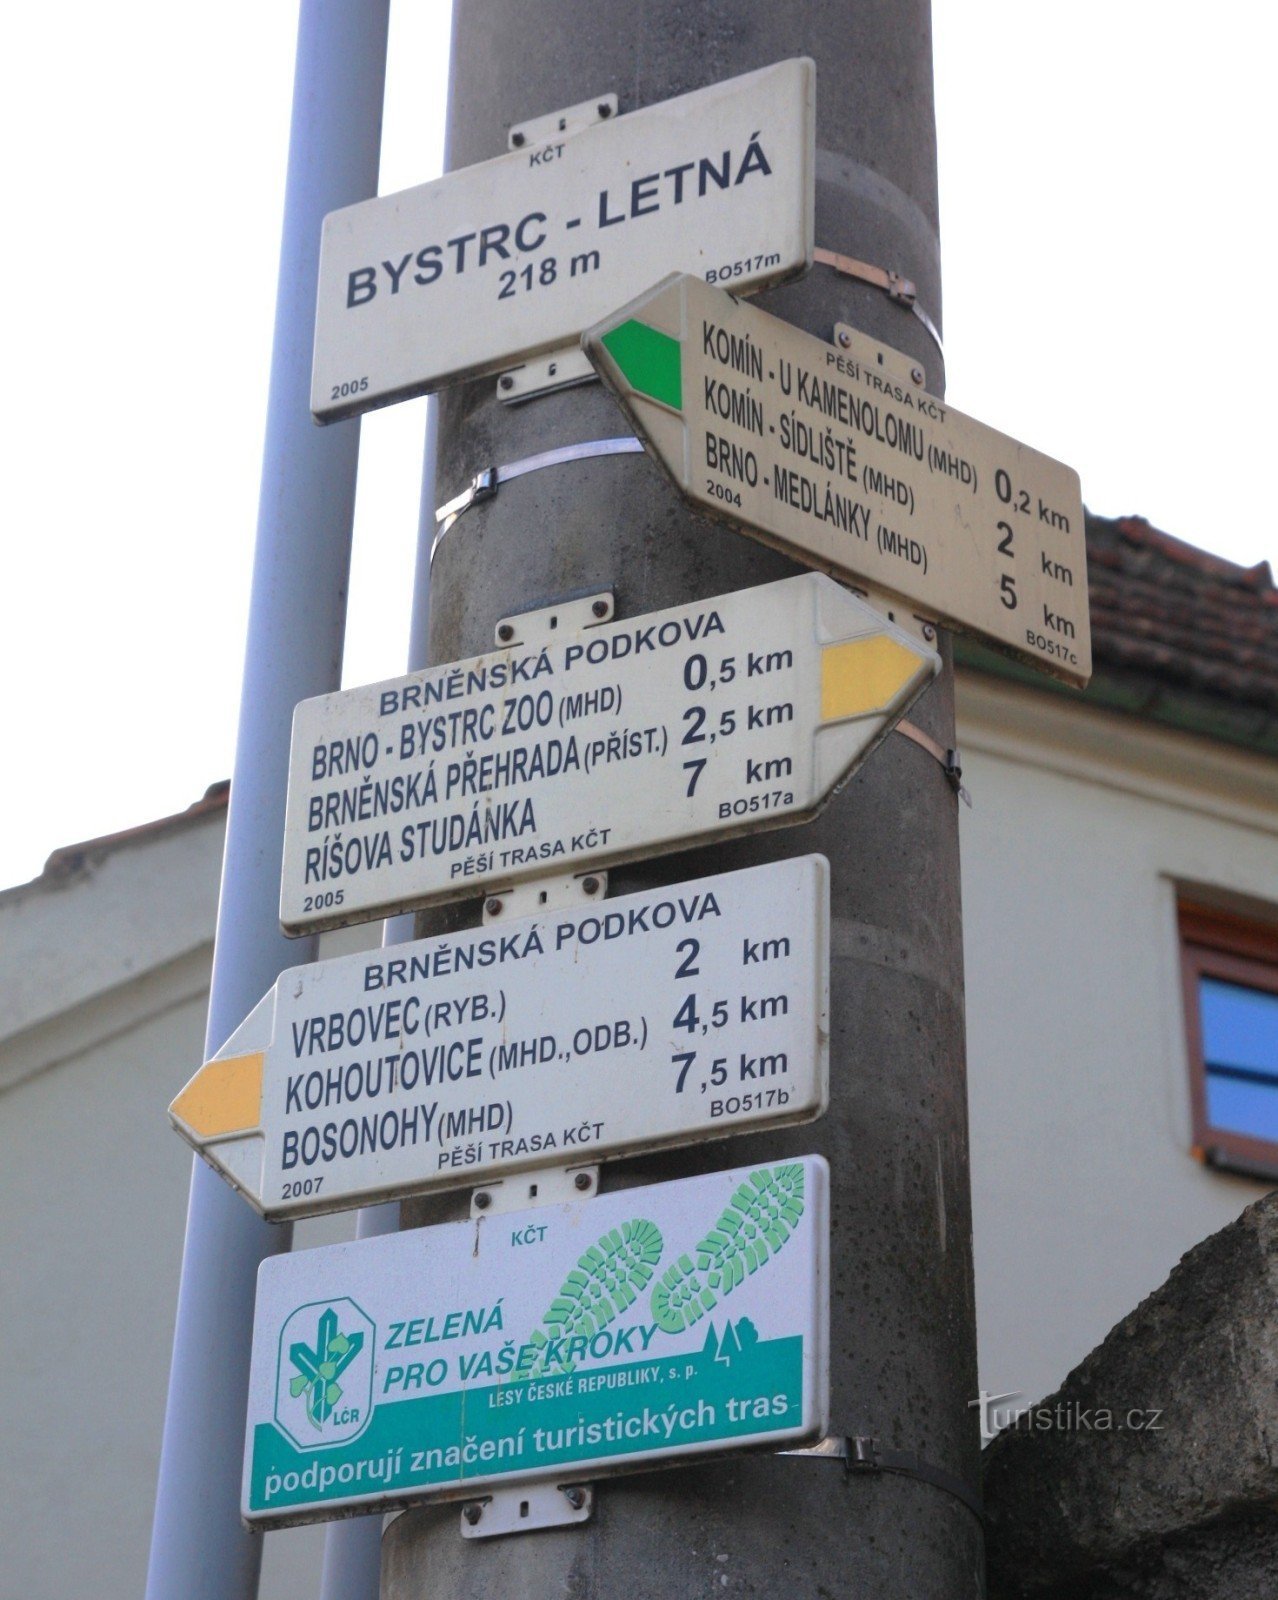 Encruzilhada turística Bystrc-Letná